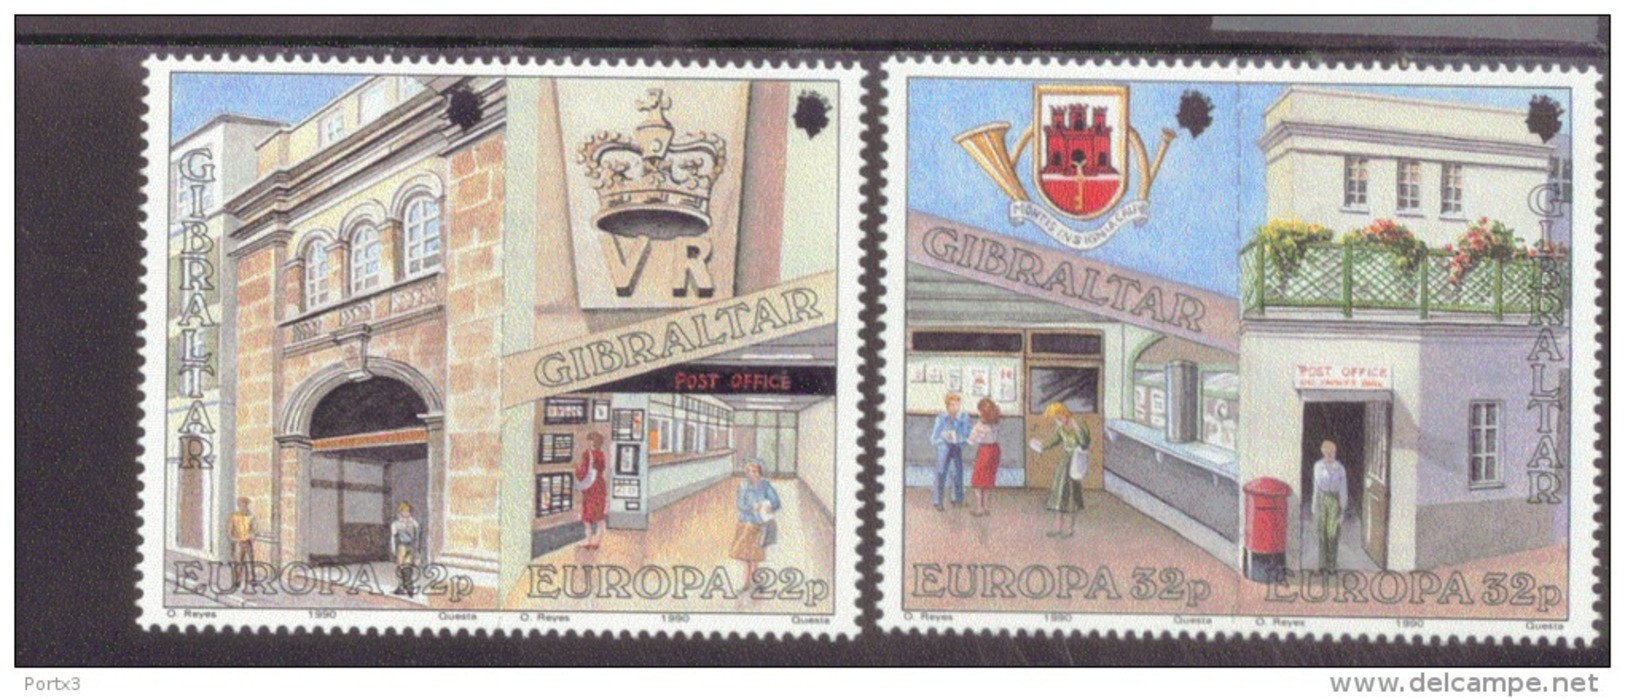 CEPT Postalische Einrichtungen Gibraltar 590 -593 Postfrisch MNH ** - 1990